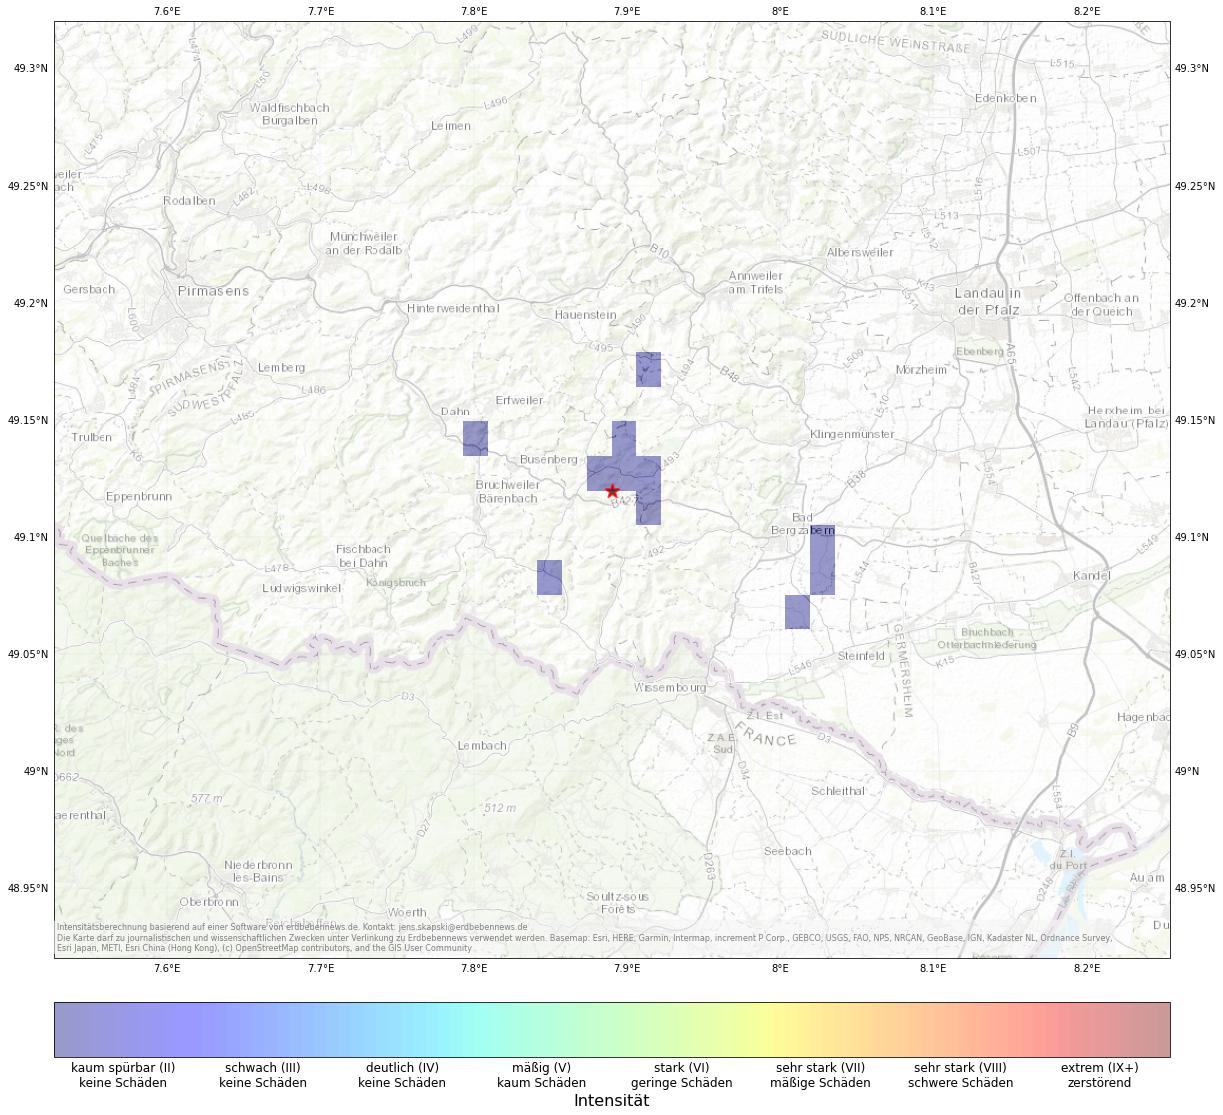 Berechnete Intensität (ShakeMap) des Erdbebens der Stärke 2.2 am 23. April, 14:12 in Deutschland